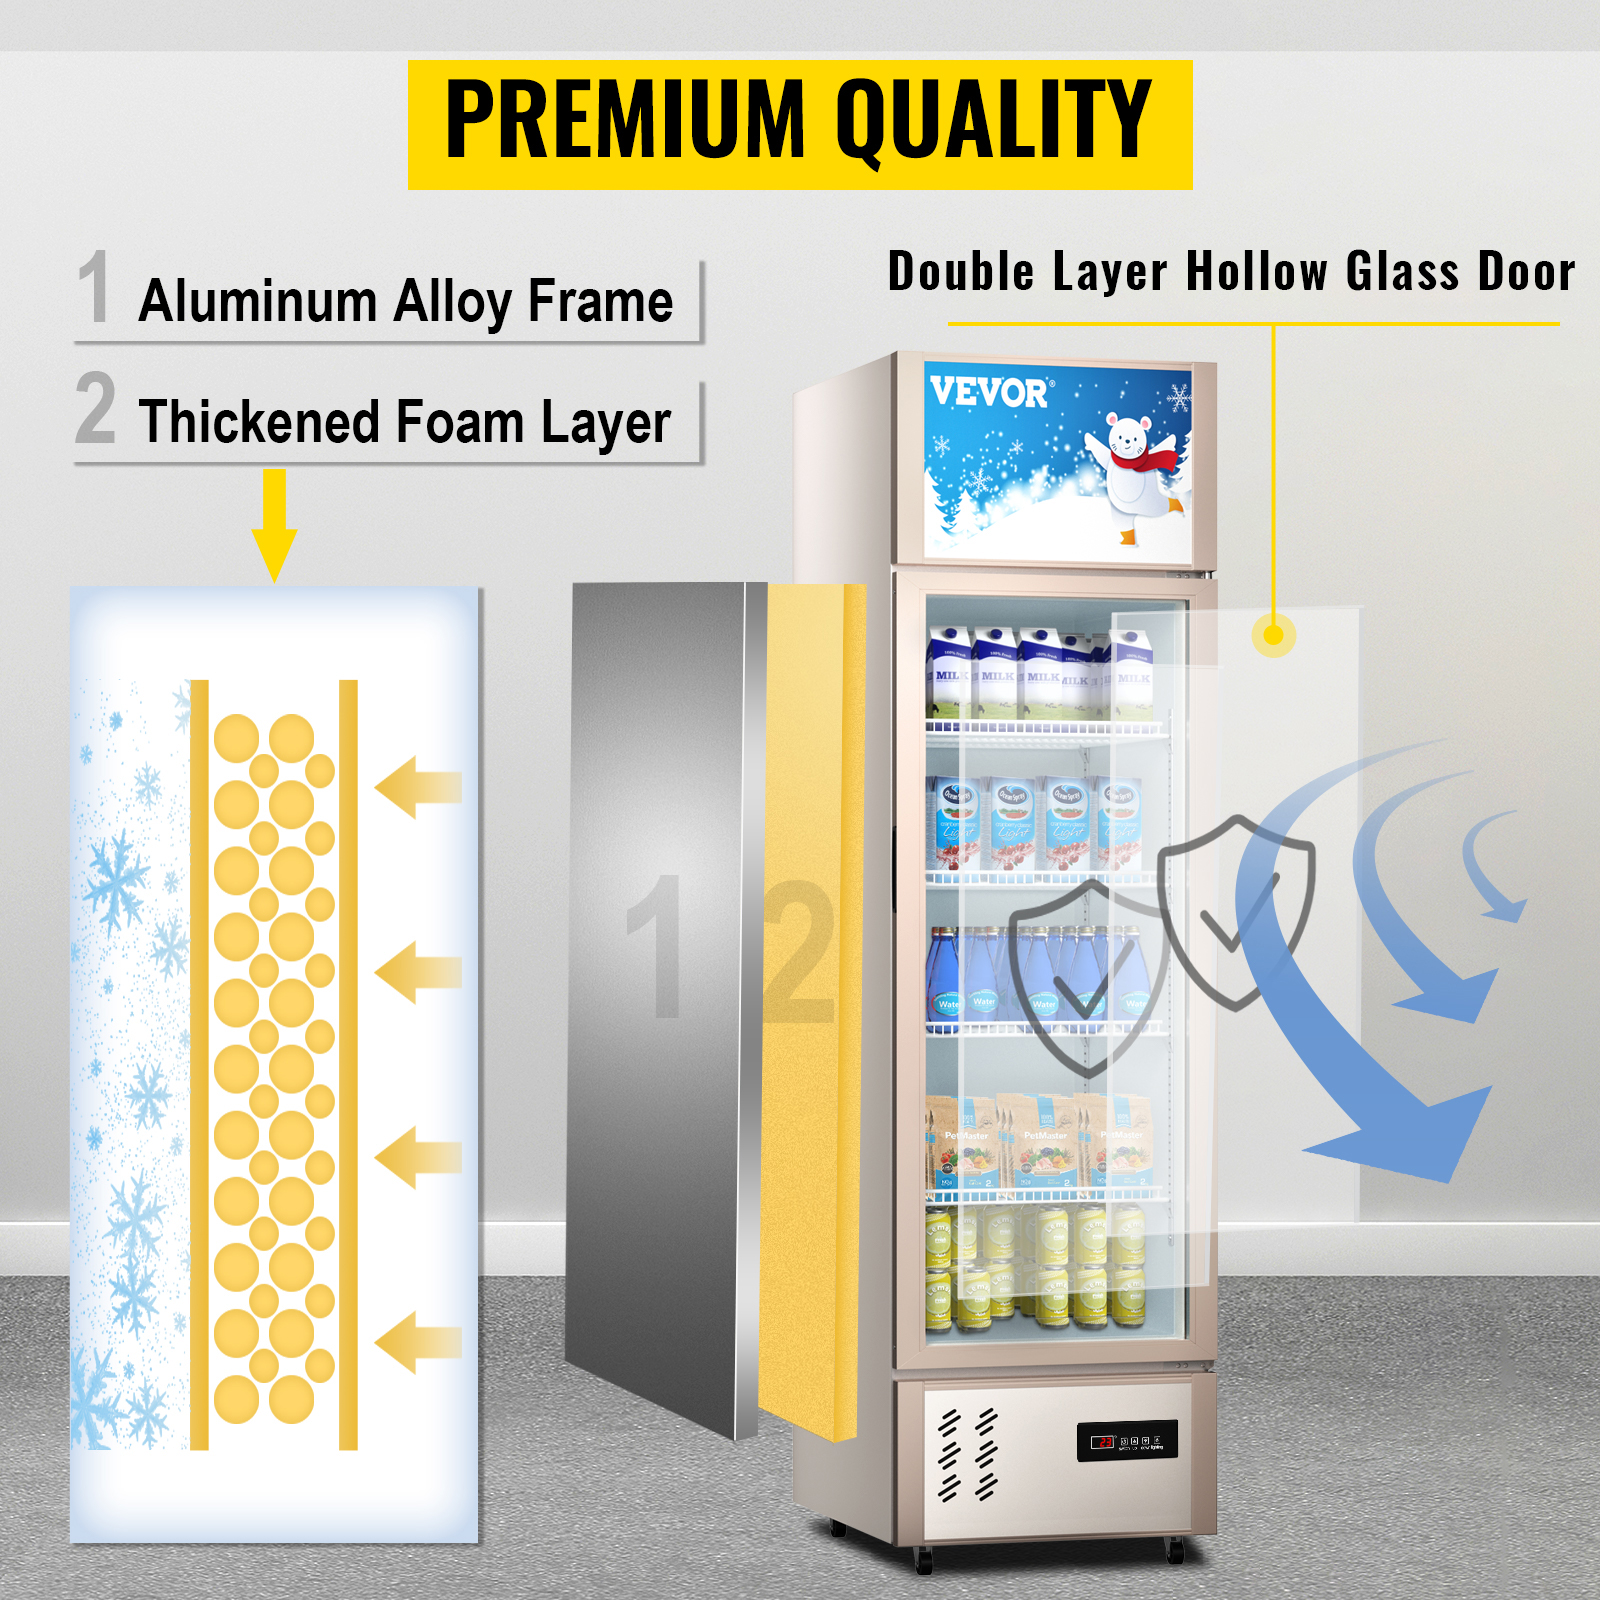 commercial refrigerated glass door standing freezer